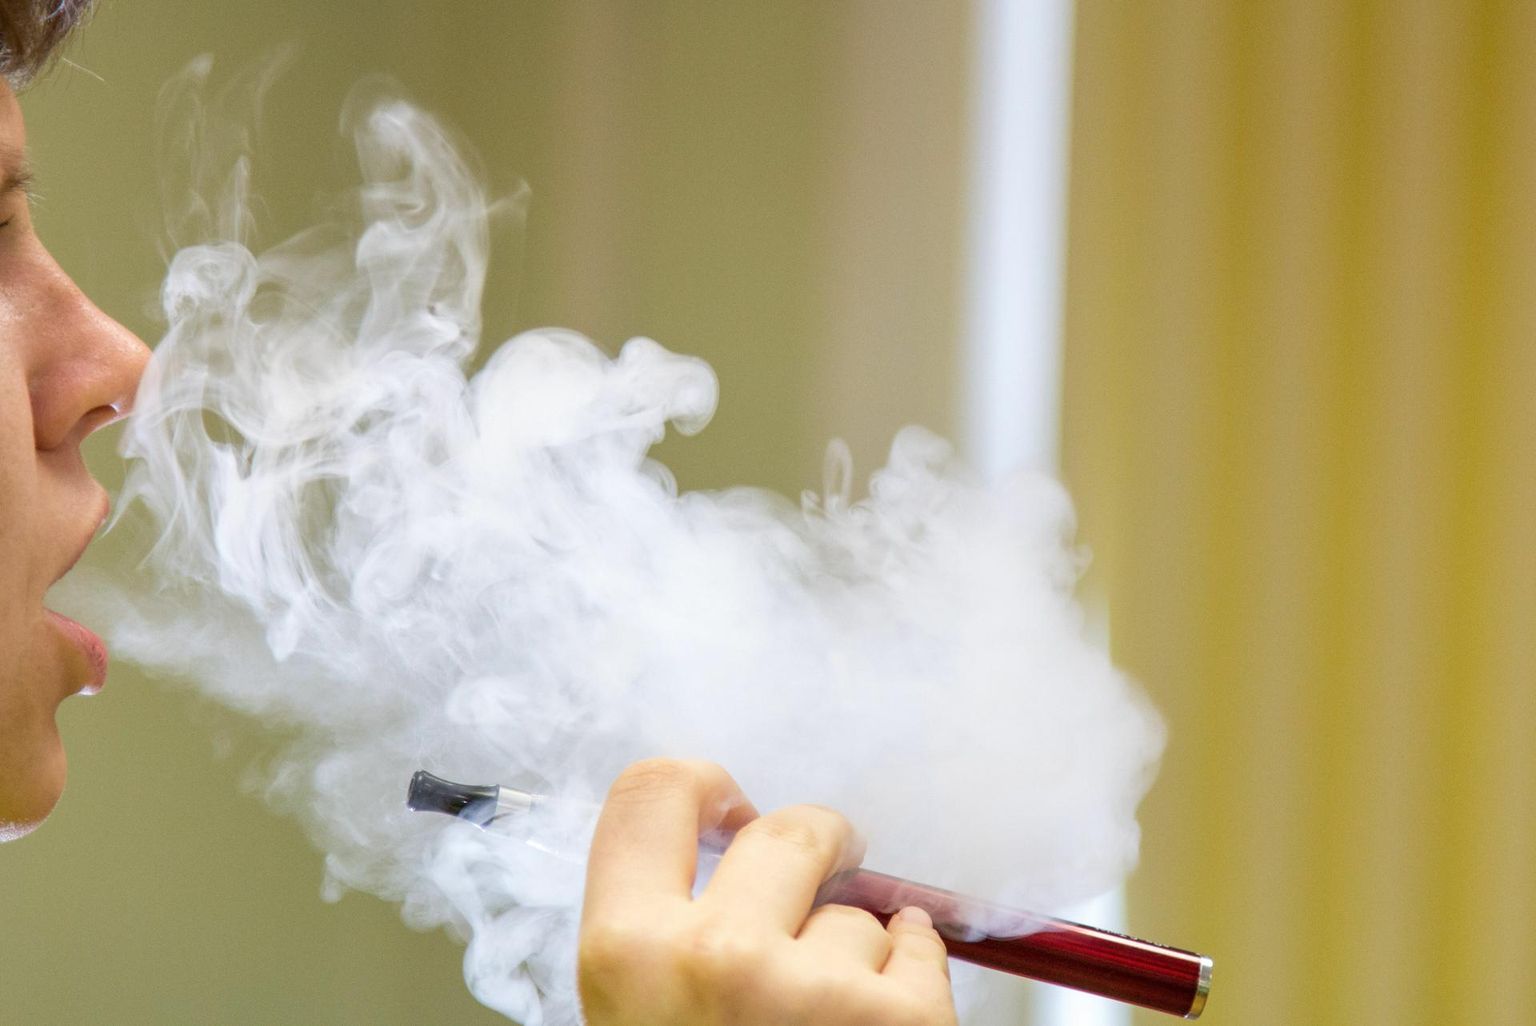 Kui aastate eest oli koolides õpilasi, kes käisid nurga taga suitsetamas, siis nüüd trügivad koolidesse e-sigaretid, mida asjatundmatu silm ei pruugi pinalis pliiatsitest eristadagi.